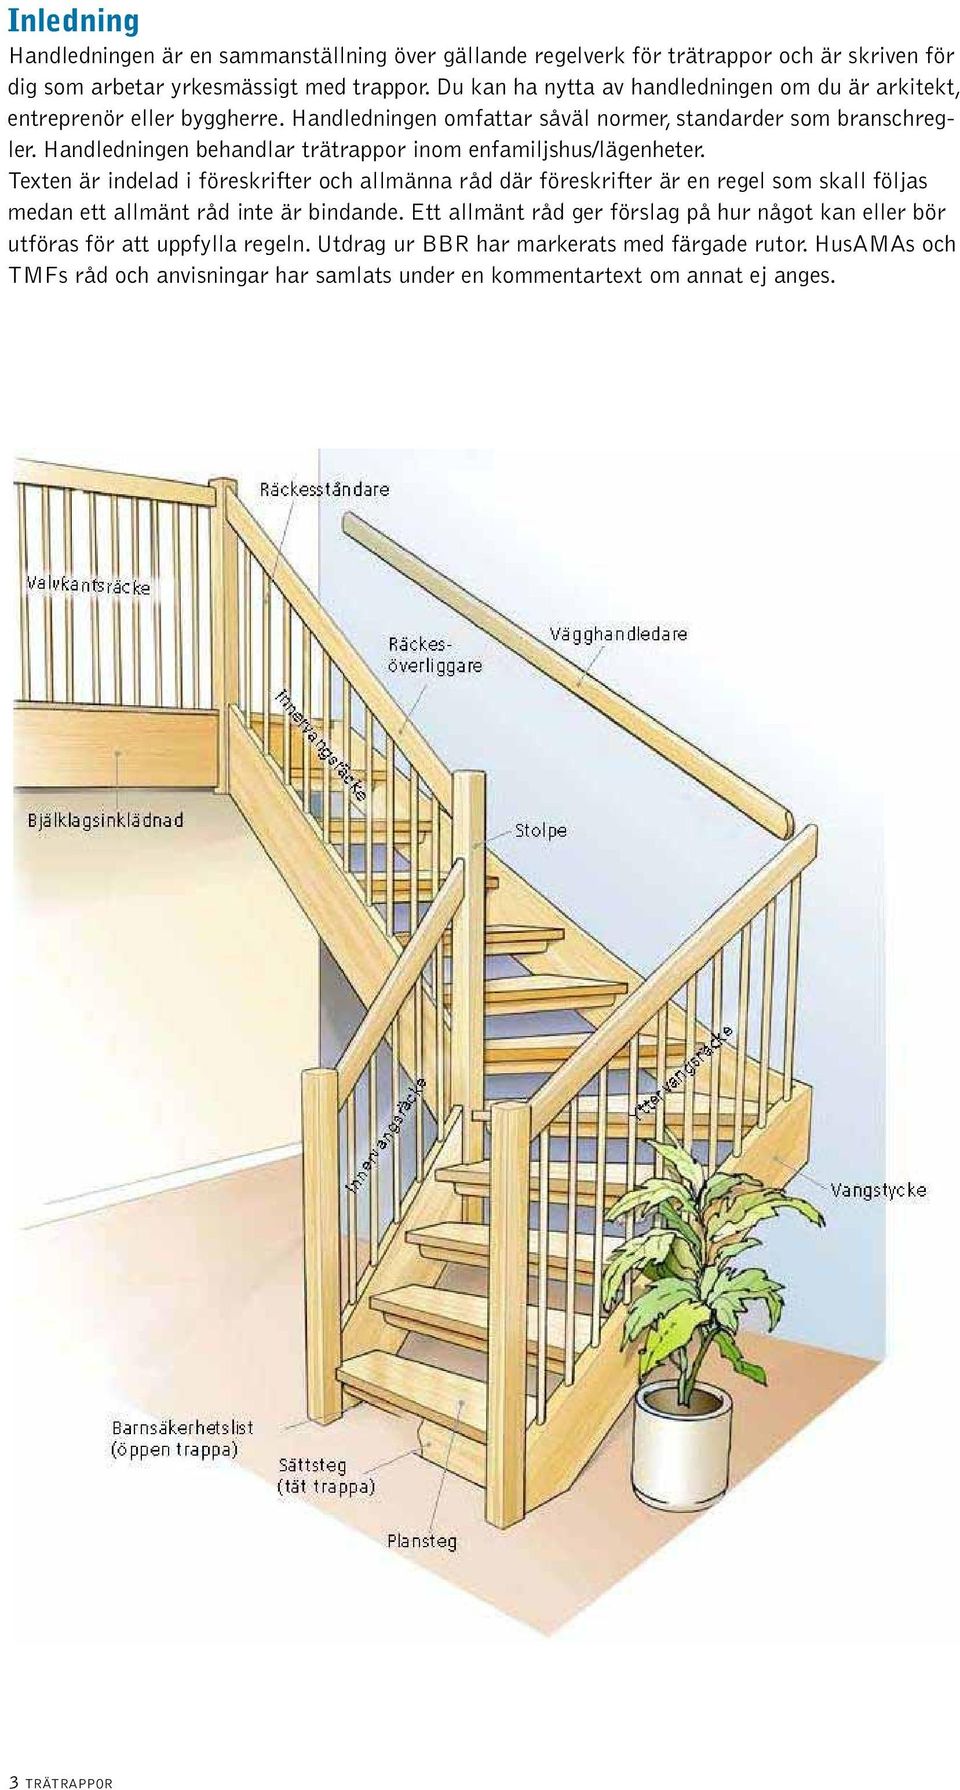 Handledningen behandlar trätrappor inom enfamiljshus/lägenheter.